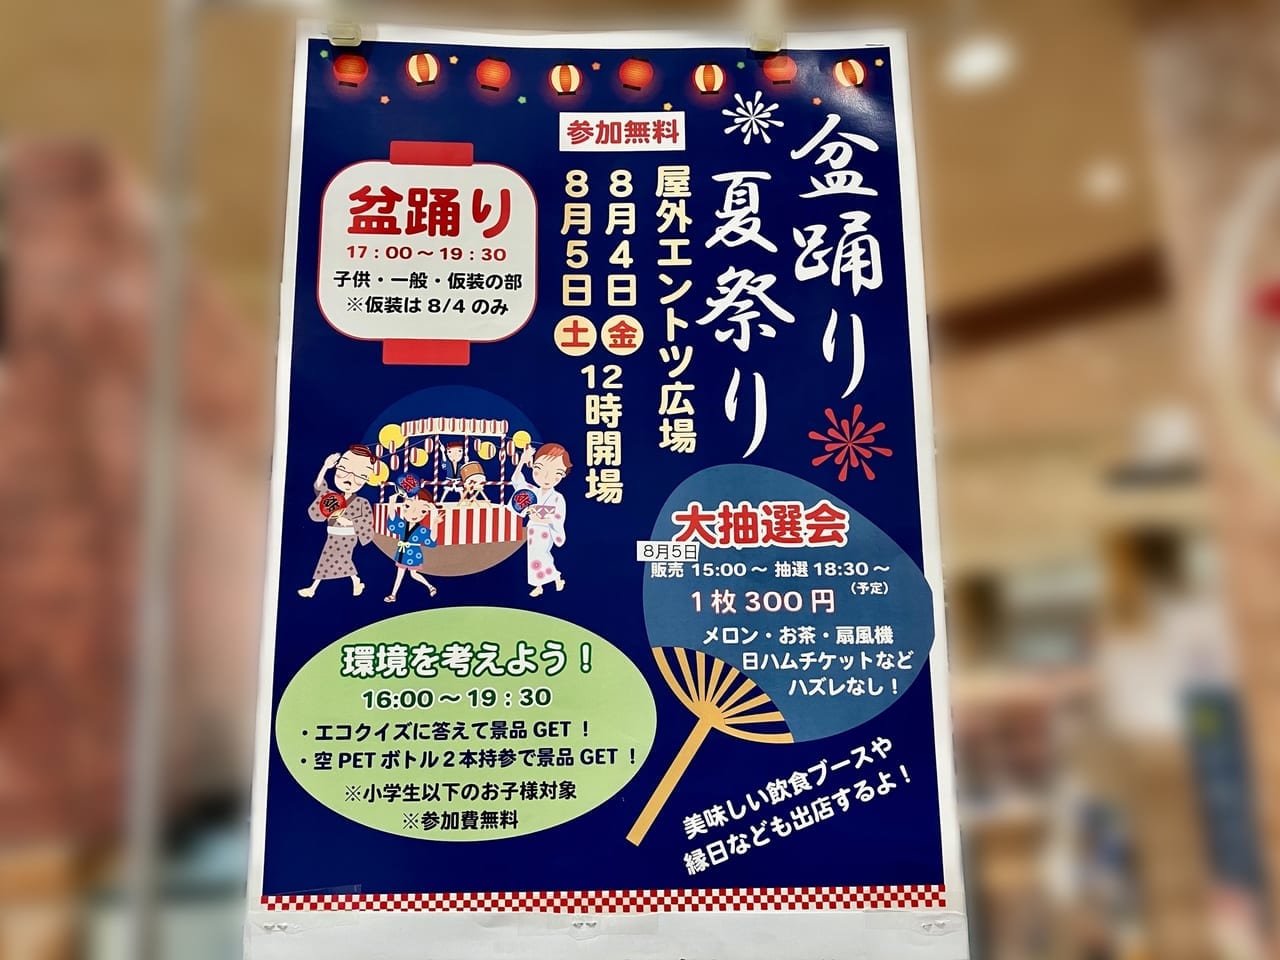 「アリオ札幌」でまだまだ続く夏祭り。8月4日と5日は盆踊りが開催されますよ。